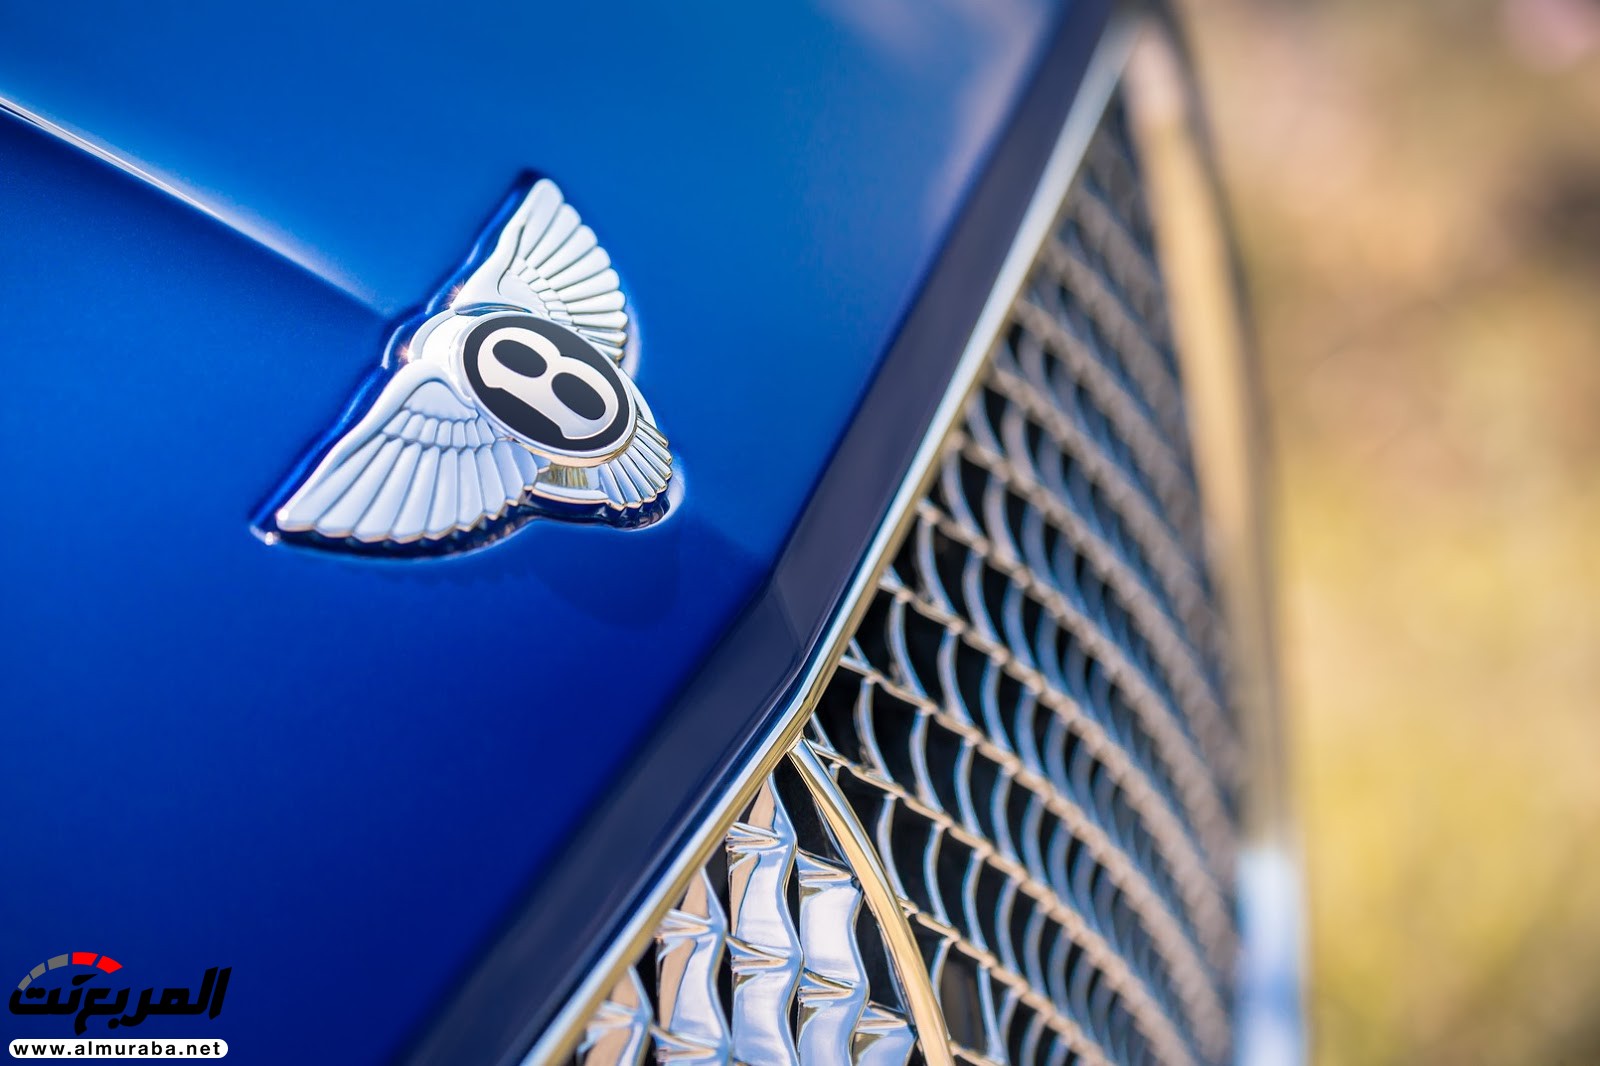 بنتلي كونتيننتال GT 2018 الجديدة كلياً "أفخم سيارة رياضية" تكشف نفسها رسمياً + صور ومواصفات 80